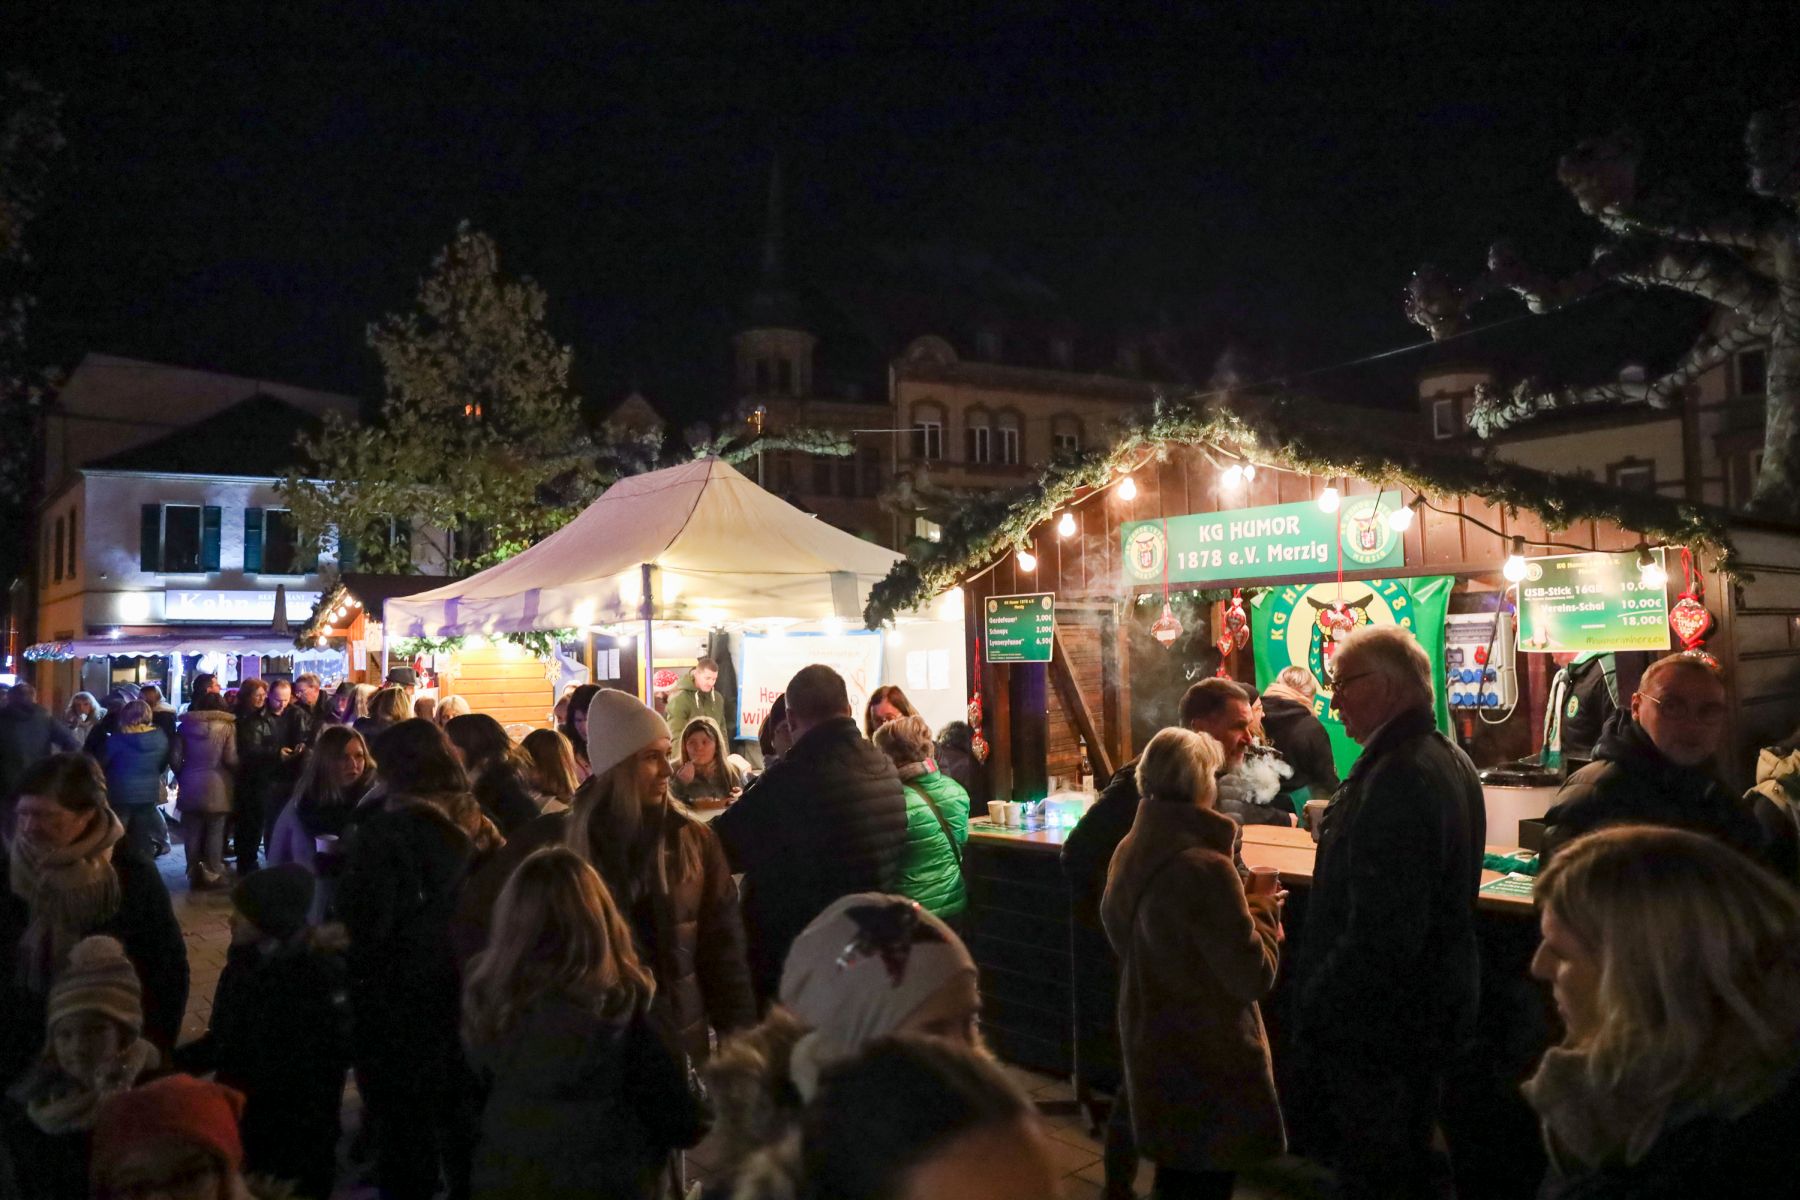 Das Foto zeigt mehrere beleuchtete und weihnachtlich dekorierte Stände beim diesjährigen Nikolausmarkt. Zahlreiche Besucher sind ebenfalls zu sehen.